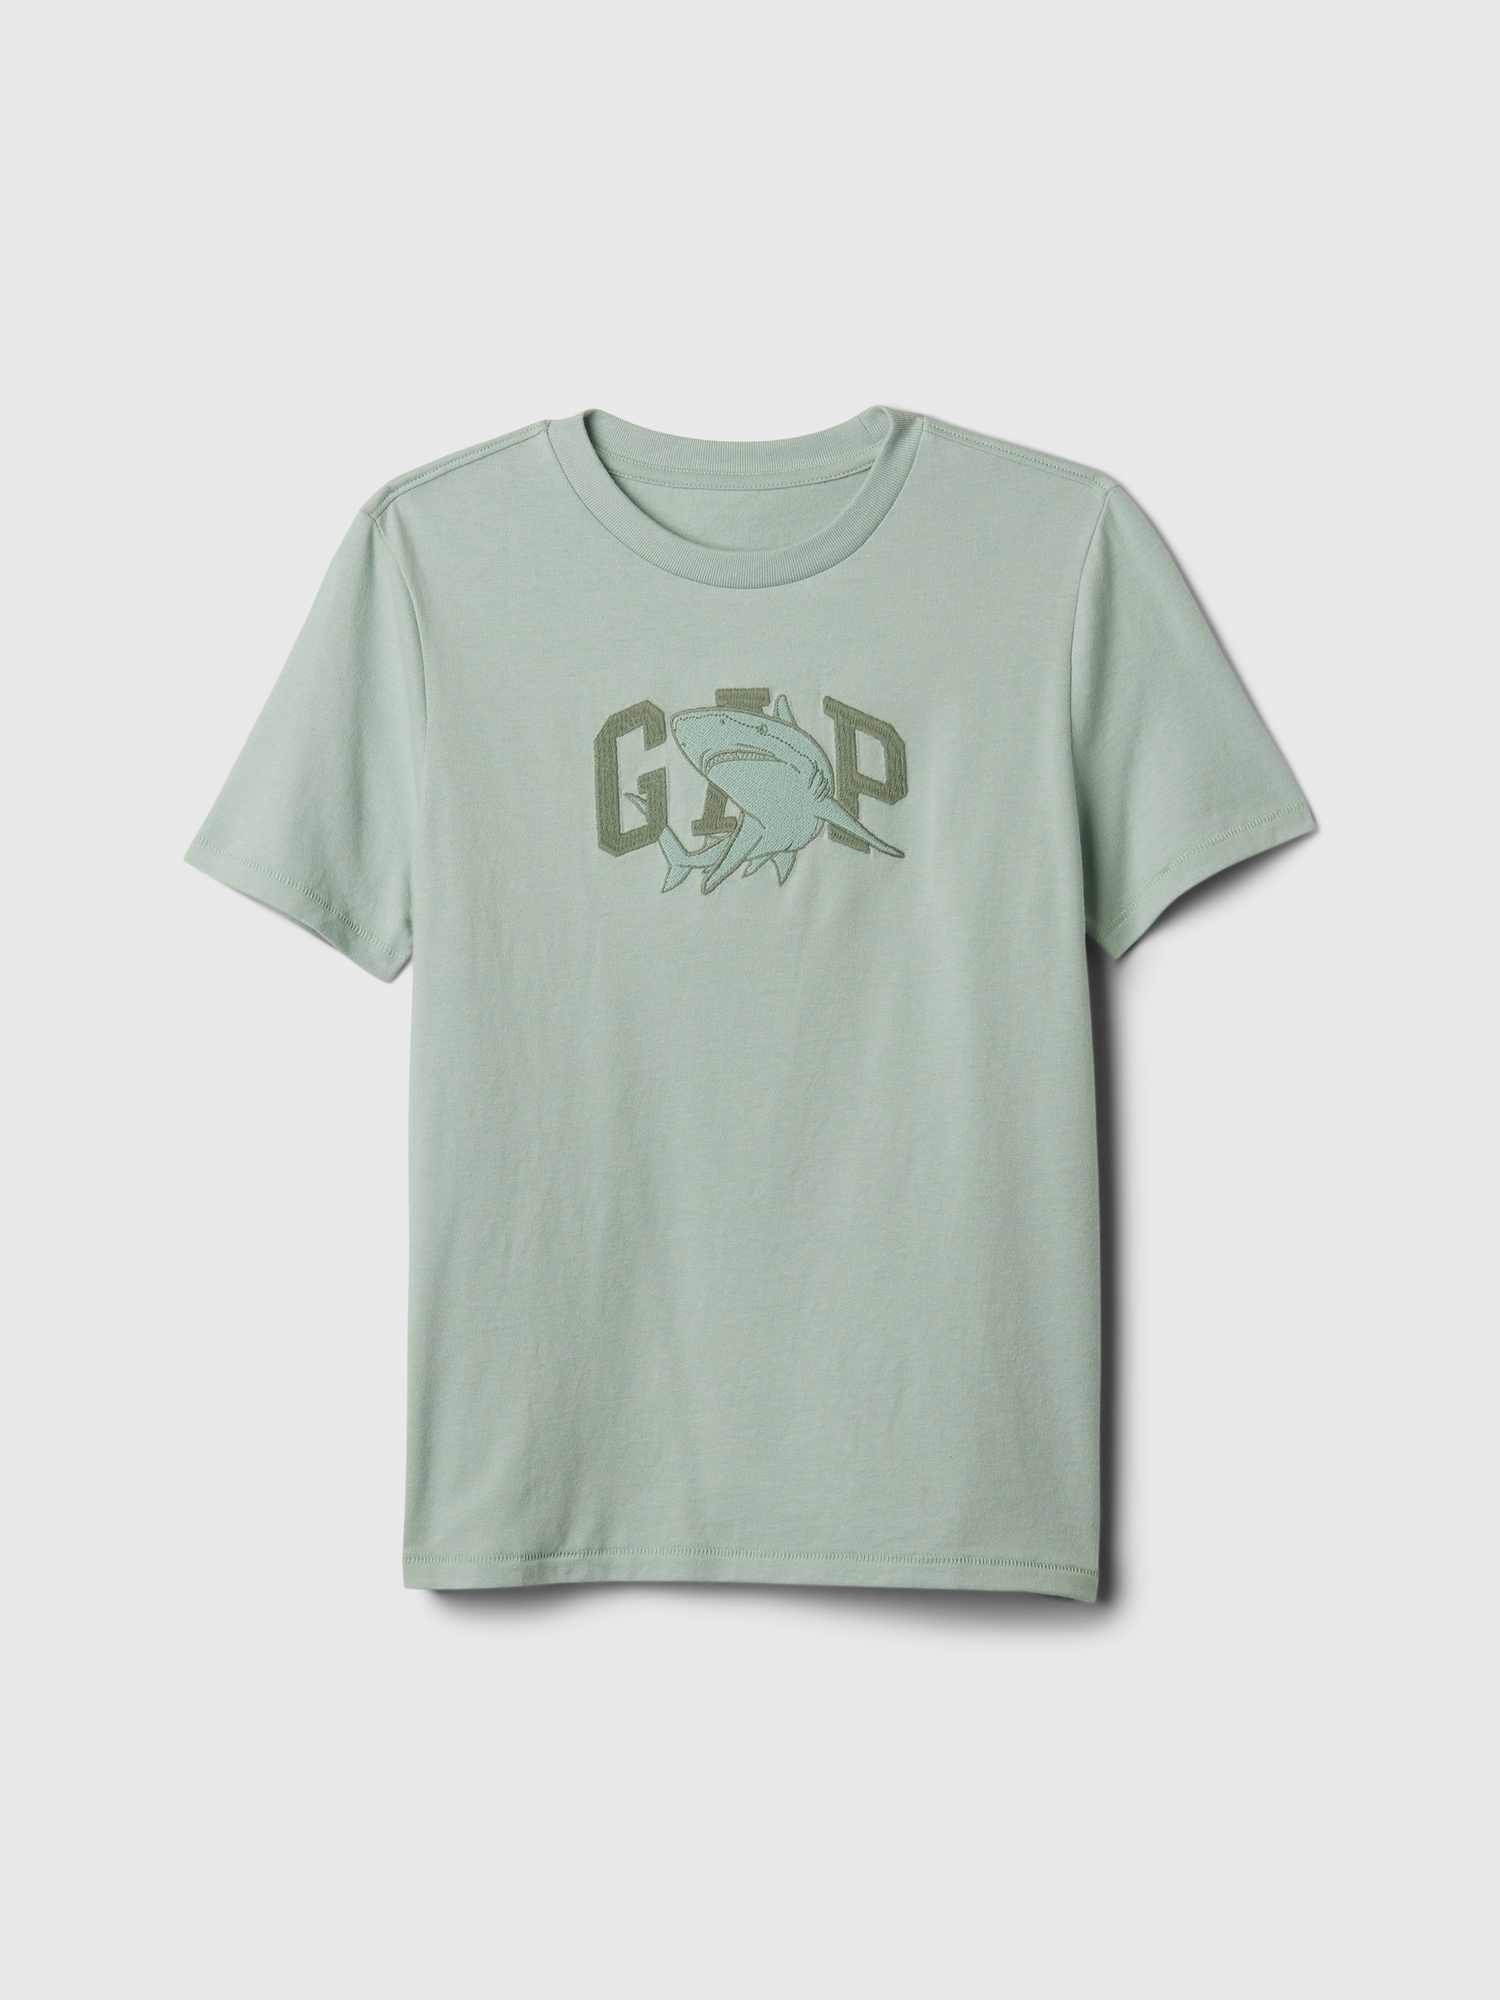 Gapロゴ グラフィックtシャツ (キッズ)